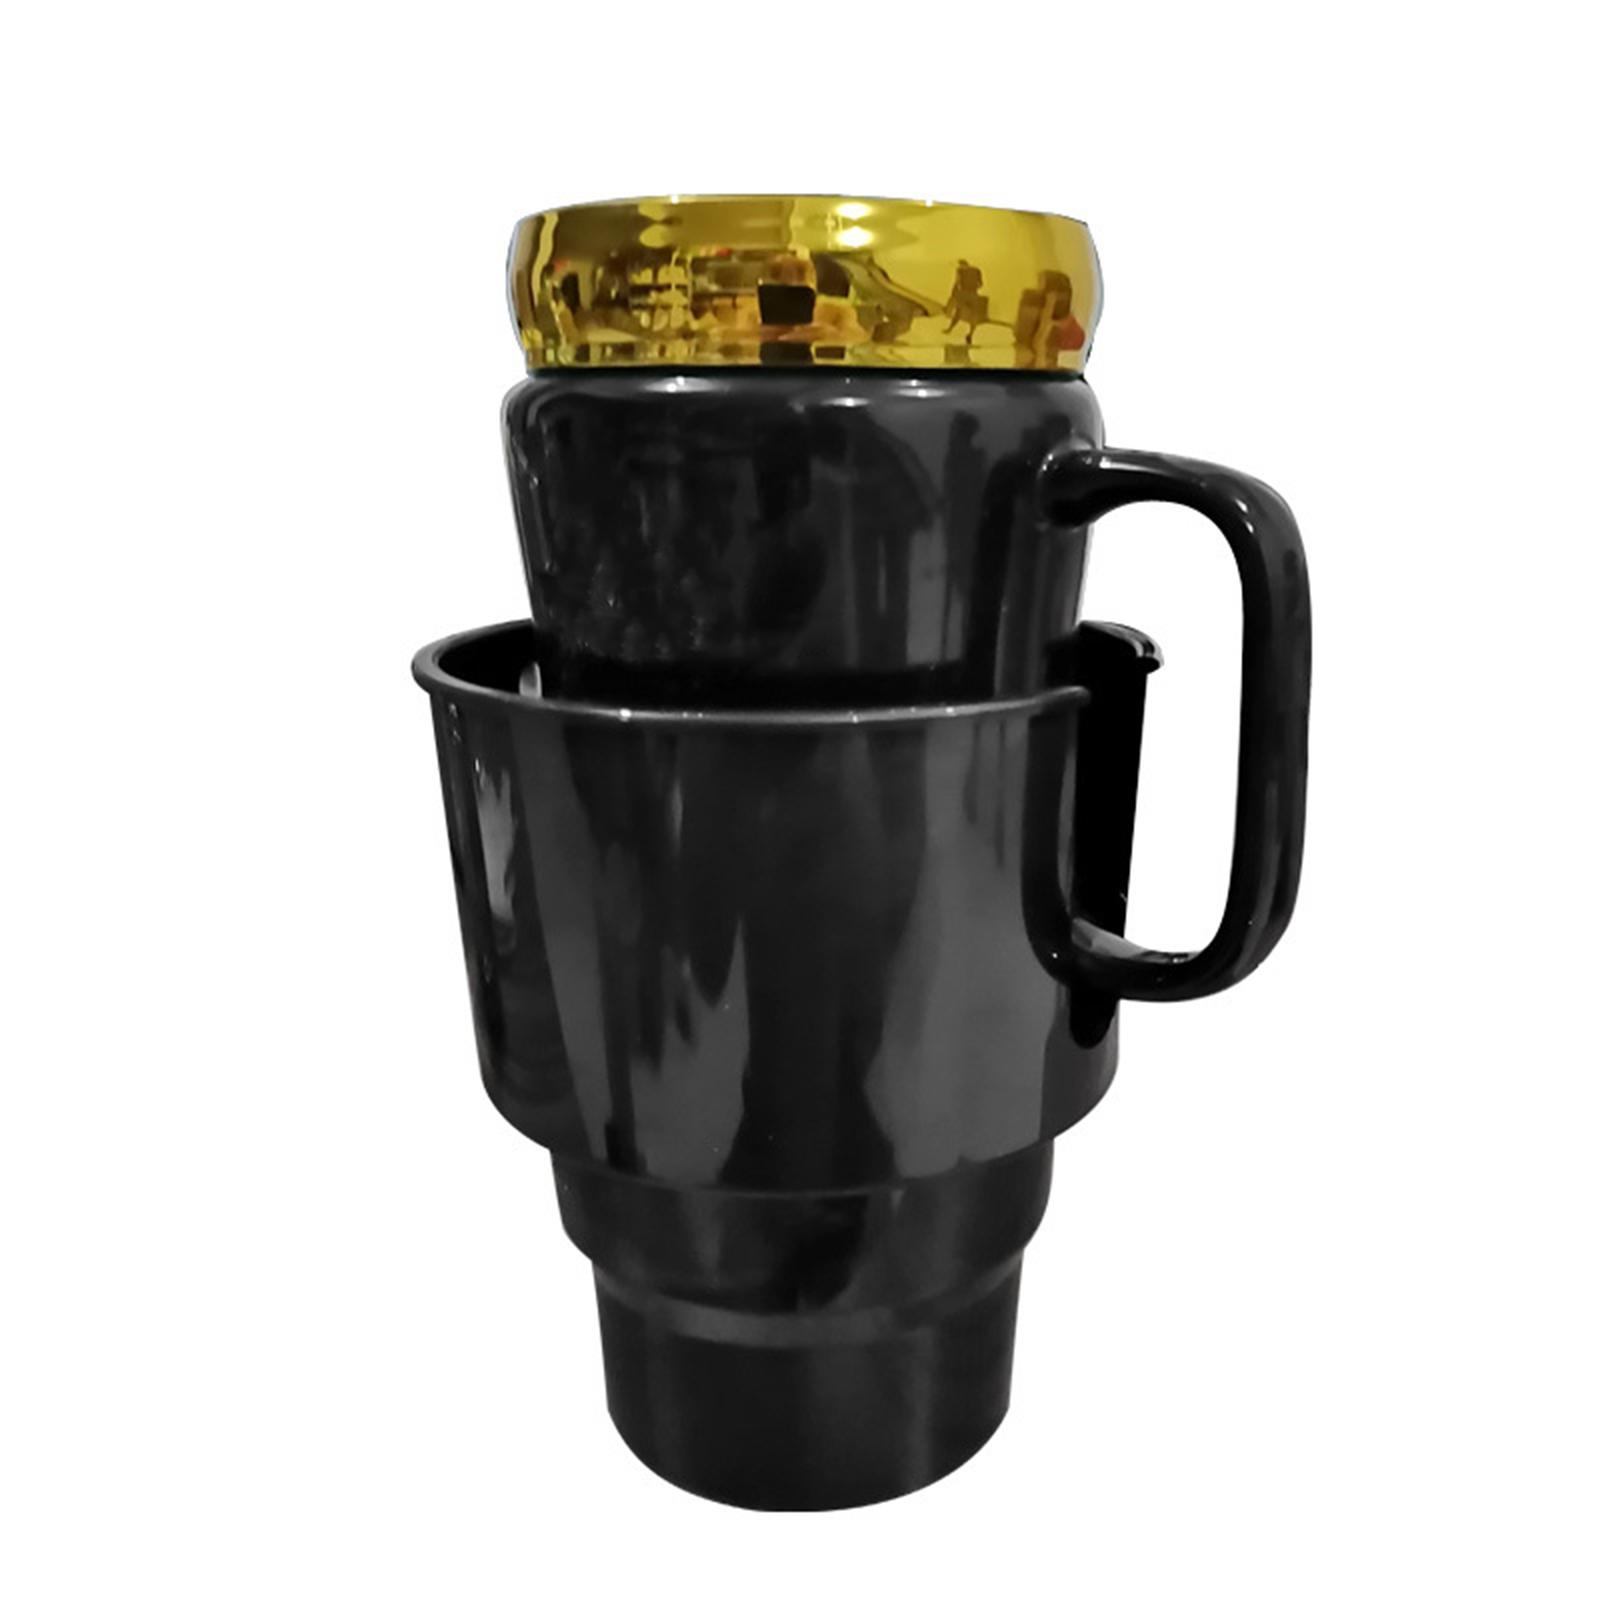 Car Water Cup Holder u shape Slot Design for Beverages Coffee Mug